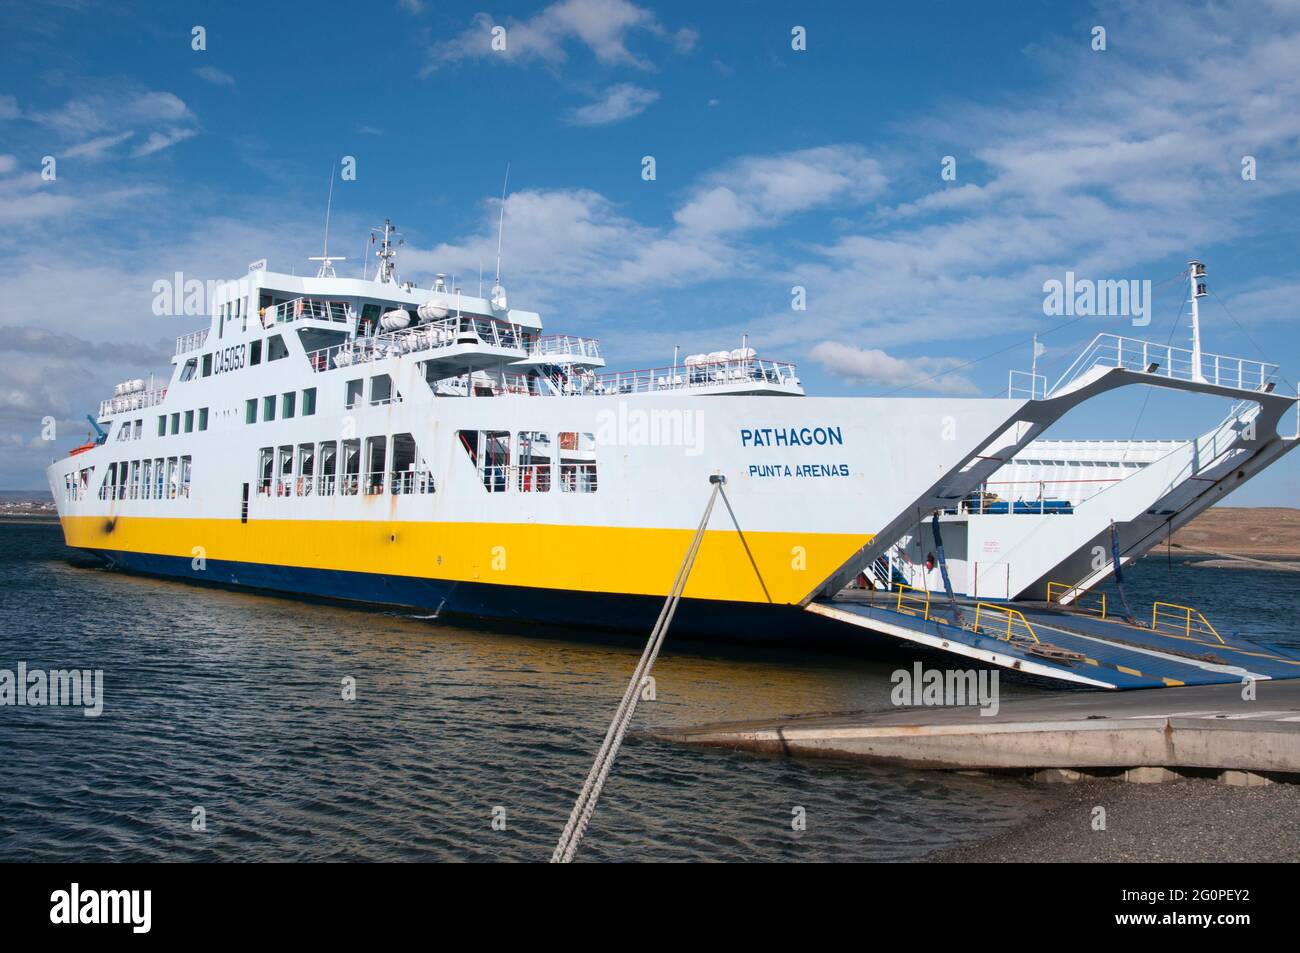 Le ferry RO-ro a amarré à Porvenir, Tierra del Fuego, avant de commencer la navette à destination de Punta Arenas sur le continent chilien Banque D'Images